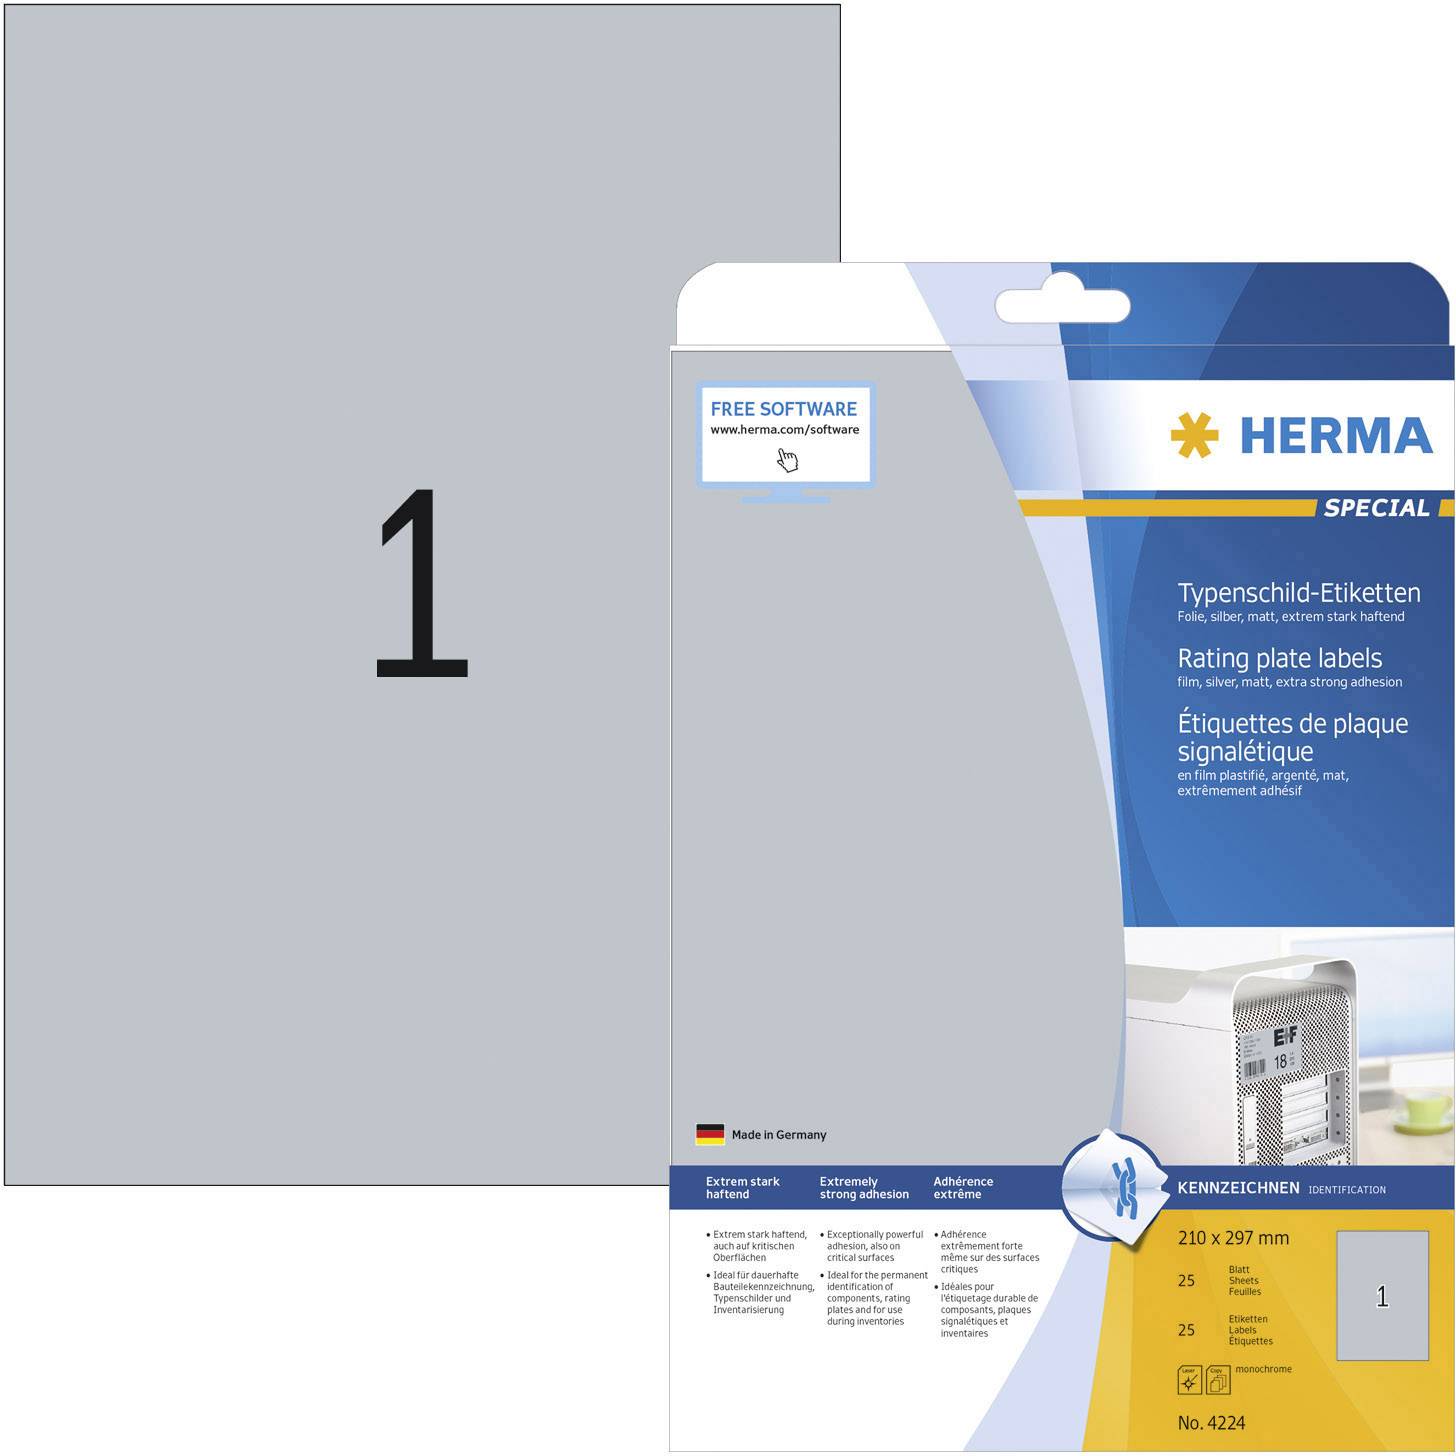 bevestig alstublieft uitvoeren Geloofsbelijdenis Herma 4224 Labels 210 x 297 mm Polyester film Silver 25 pc(s) Permanent  Nameplates Laser, Copier | Conrad.com